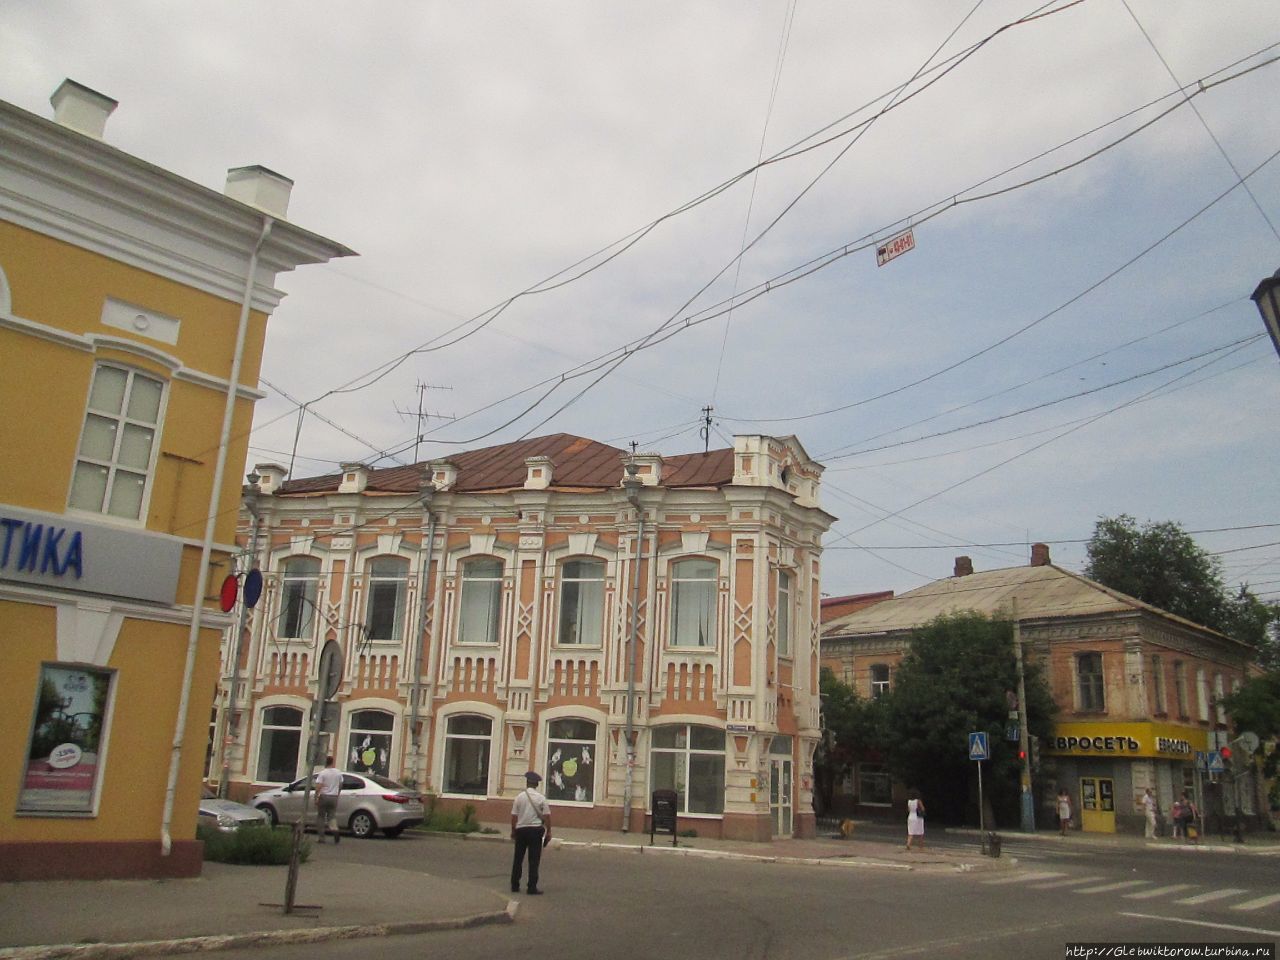 Прогулка по кварталам вокруг Кремля Астрахань, Россия